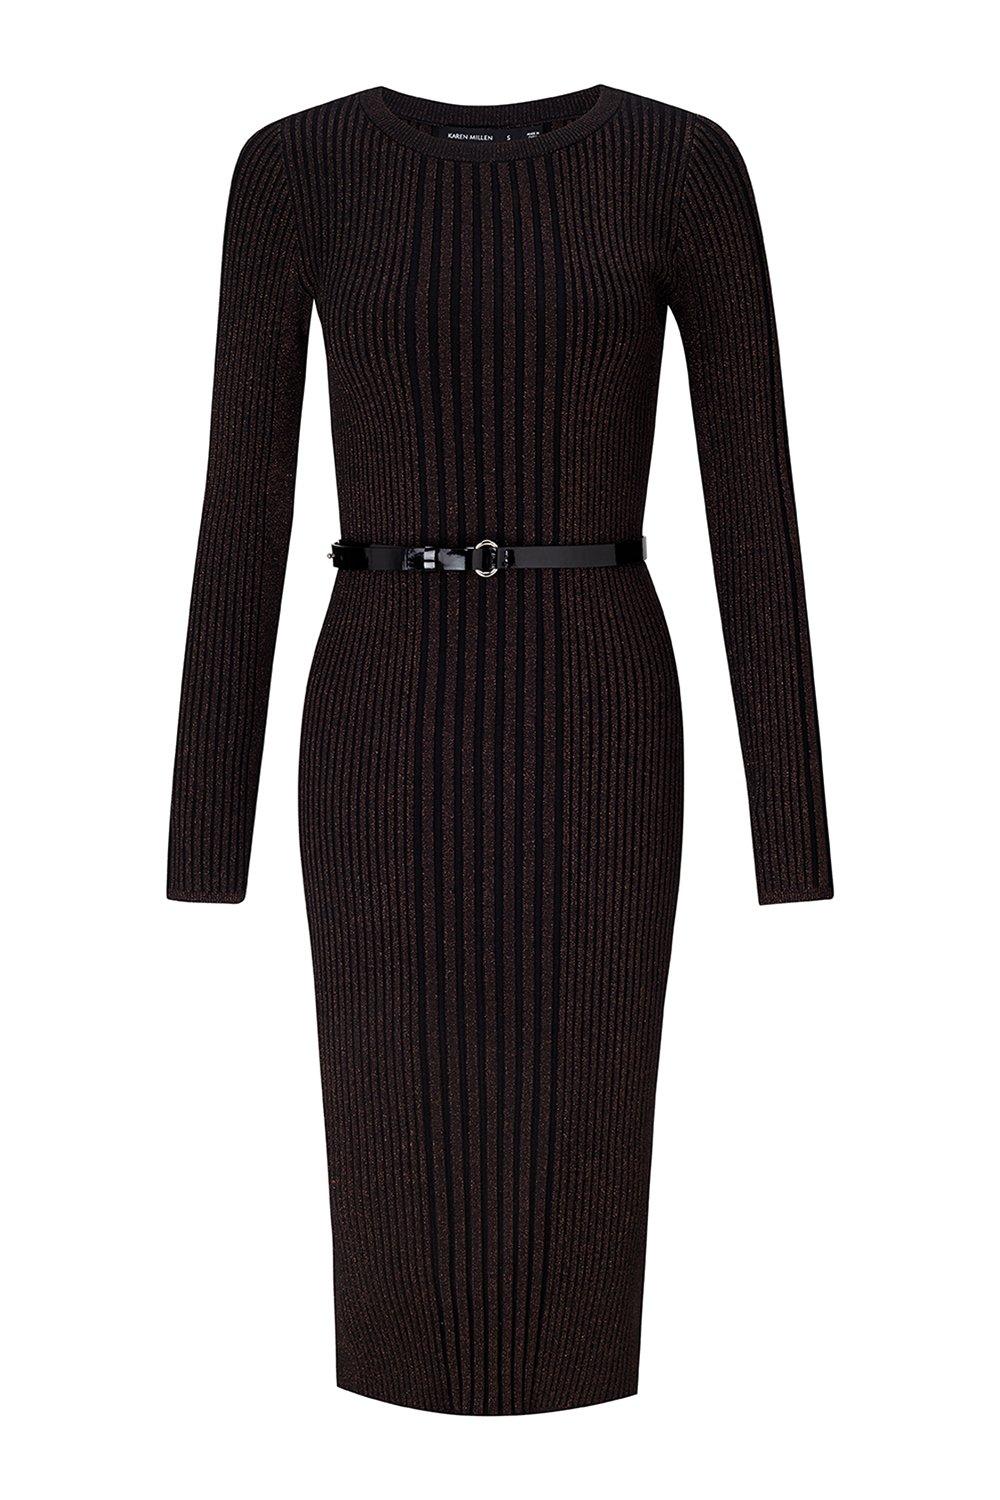 black metallic knit dress